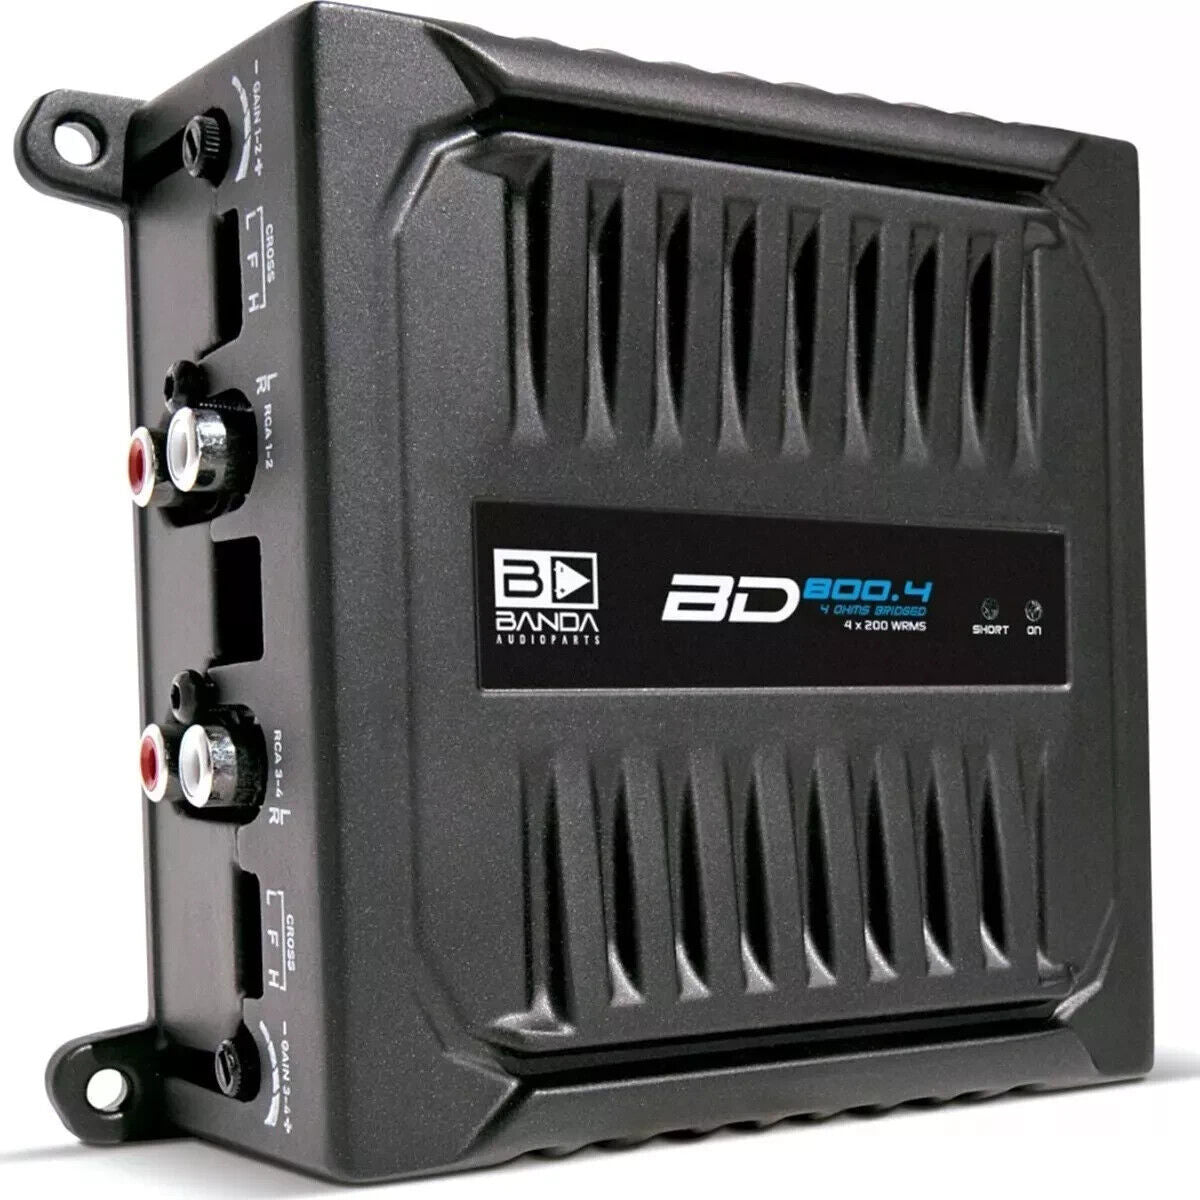 Amplificador Banda Audioparts BD800.4